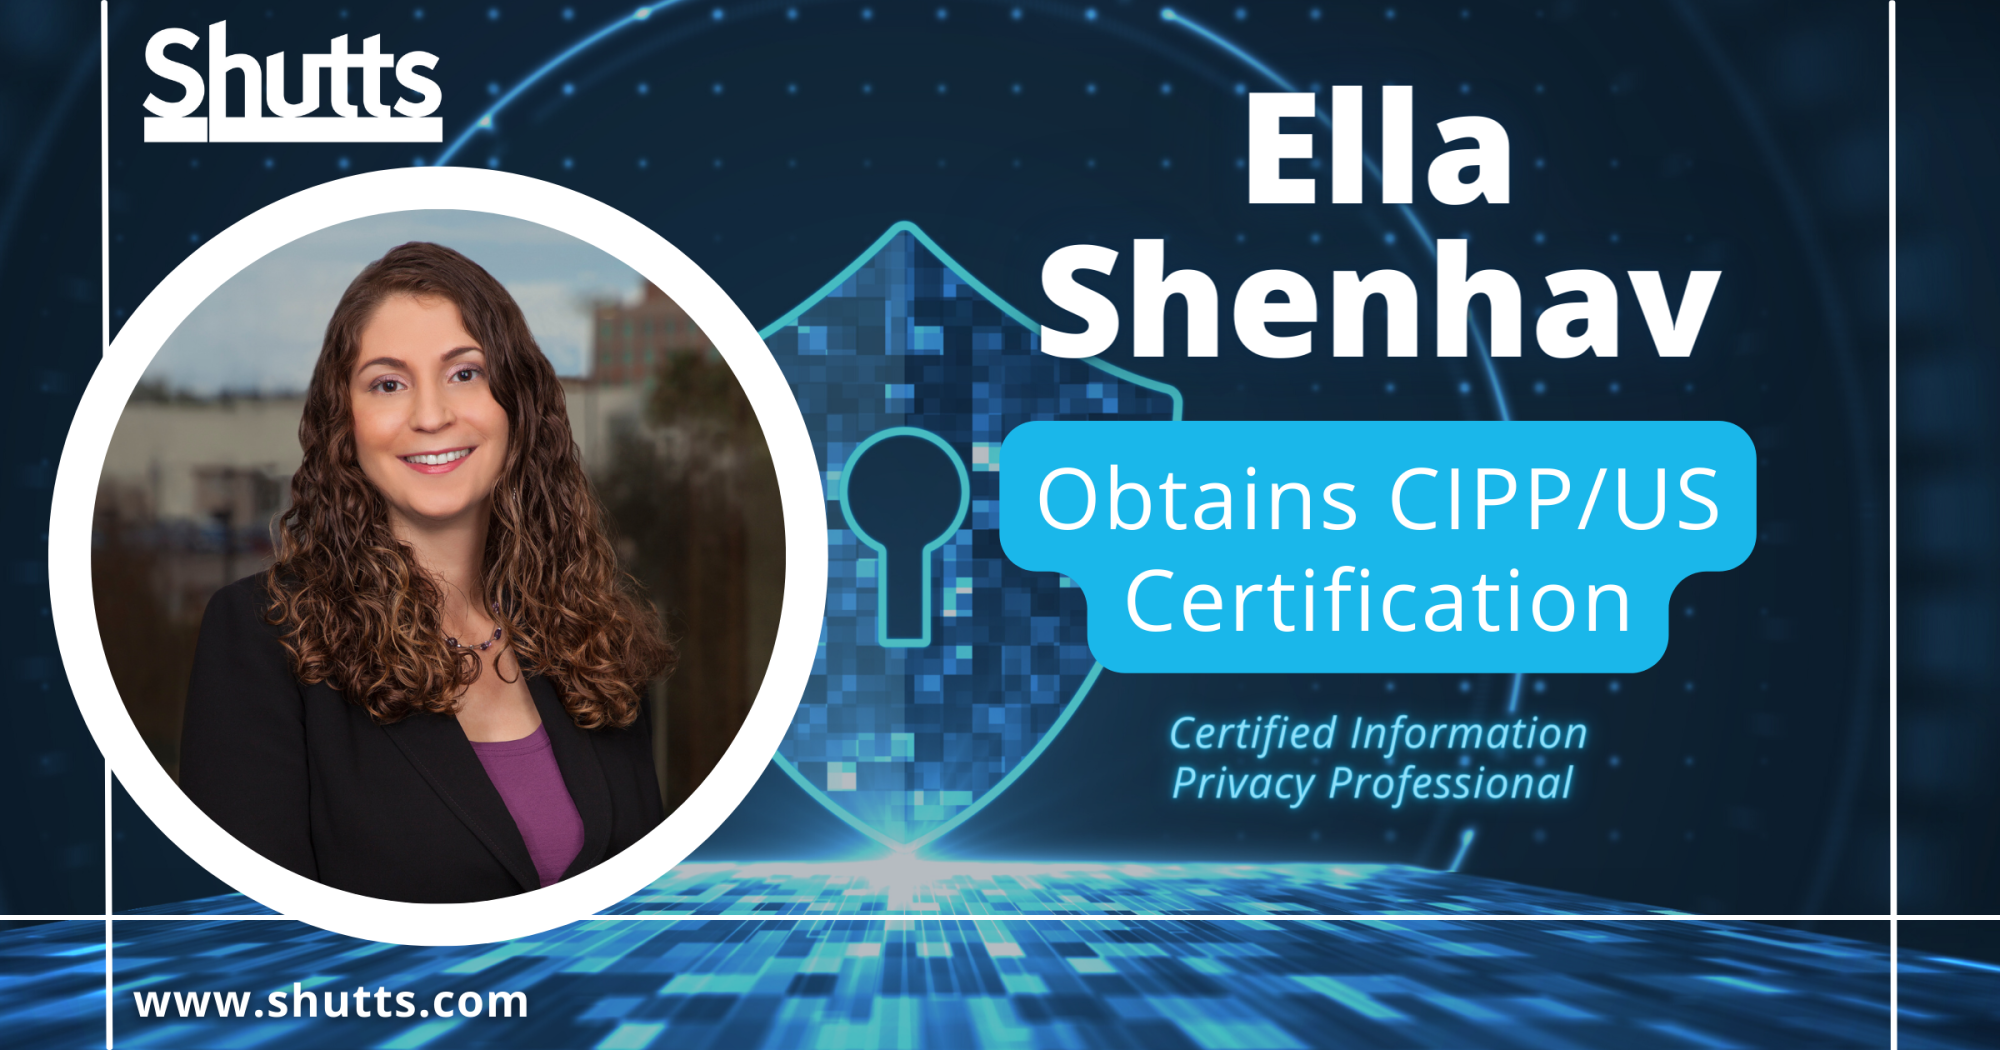 Ella Shenhav Obtains CIPP/US Certification